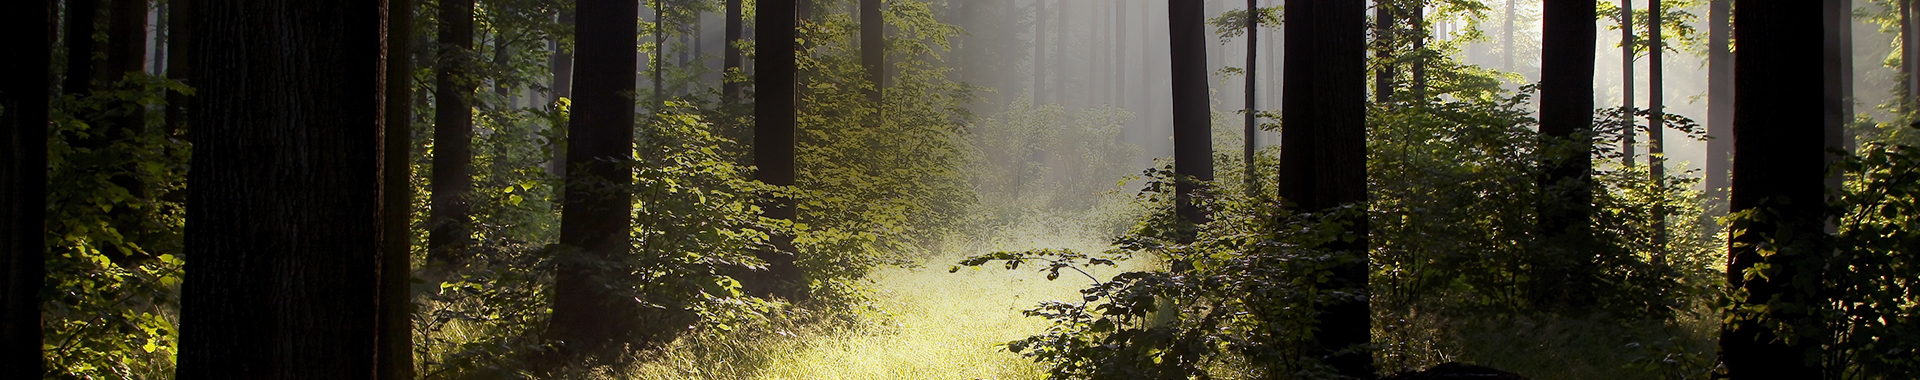 Lichtung in Eichenwald im Sonnenlicht